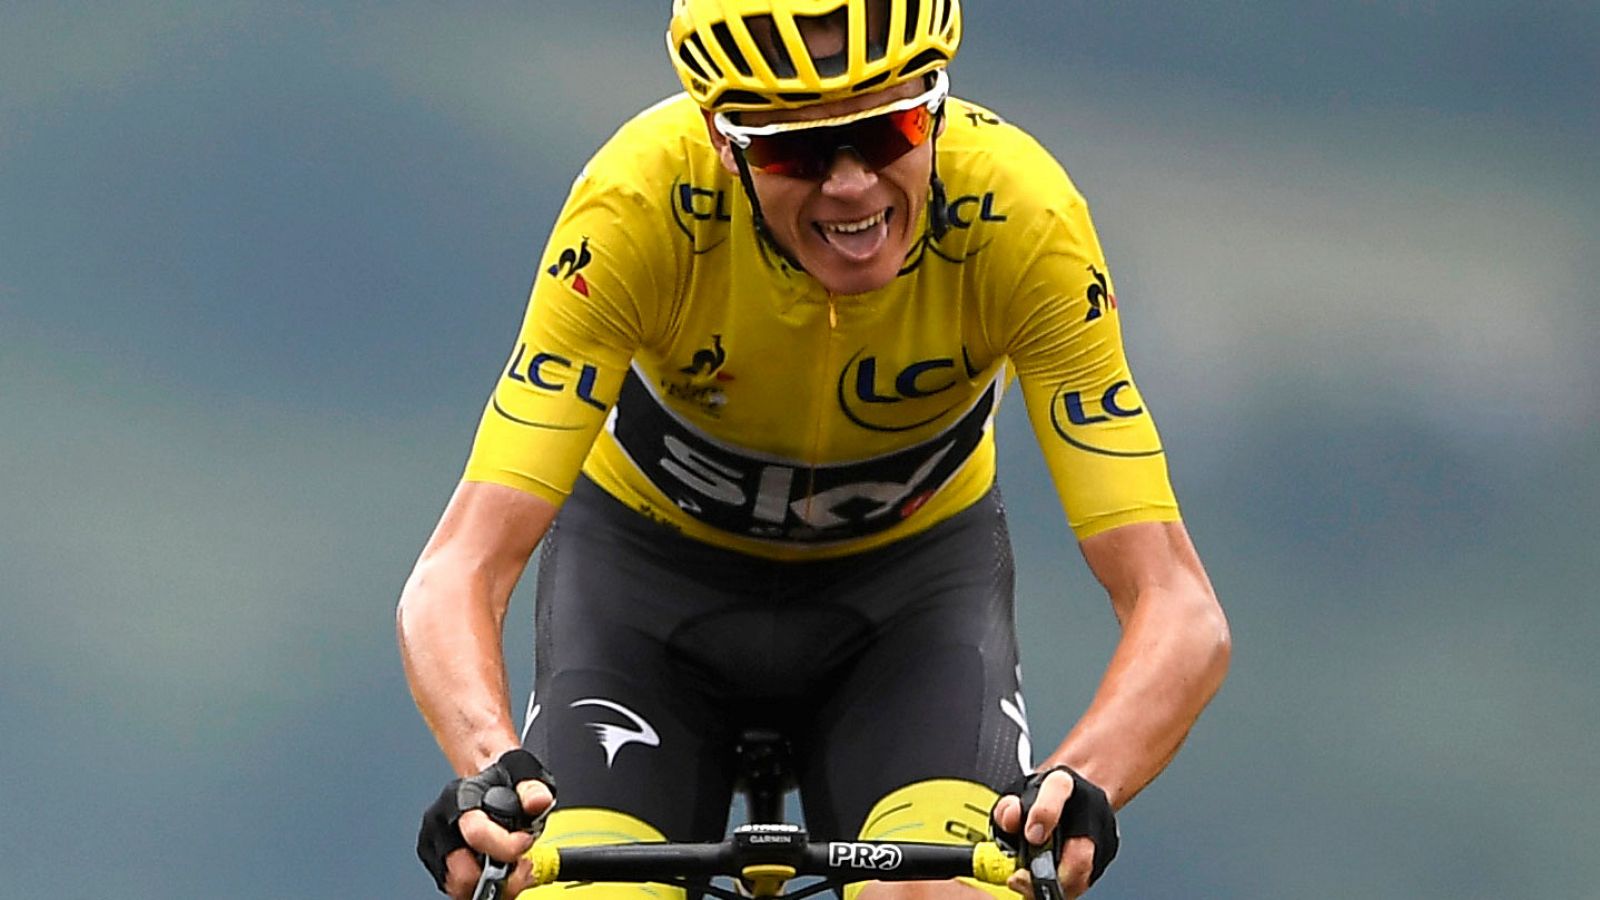 Ciclismo | Chris Froome podrá correr el Tour de Francia